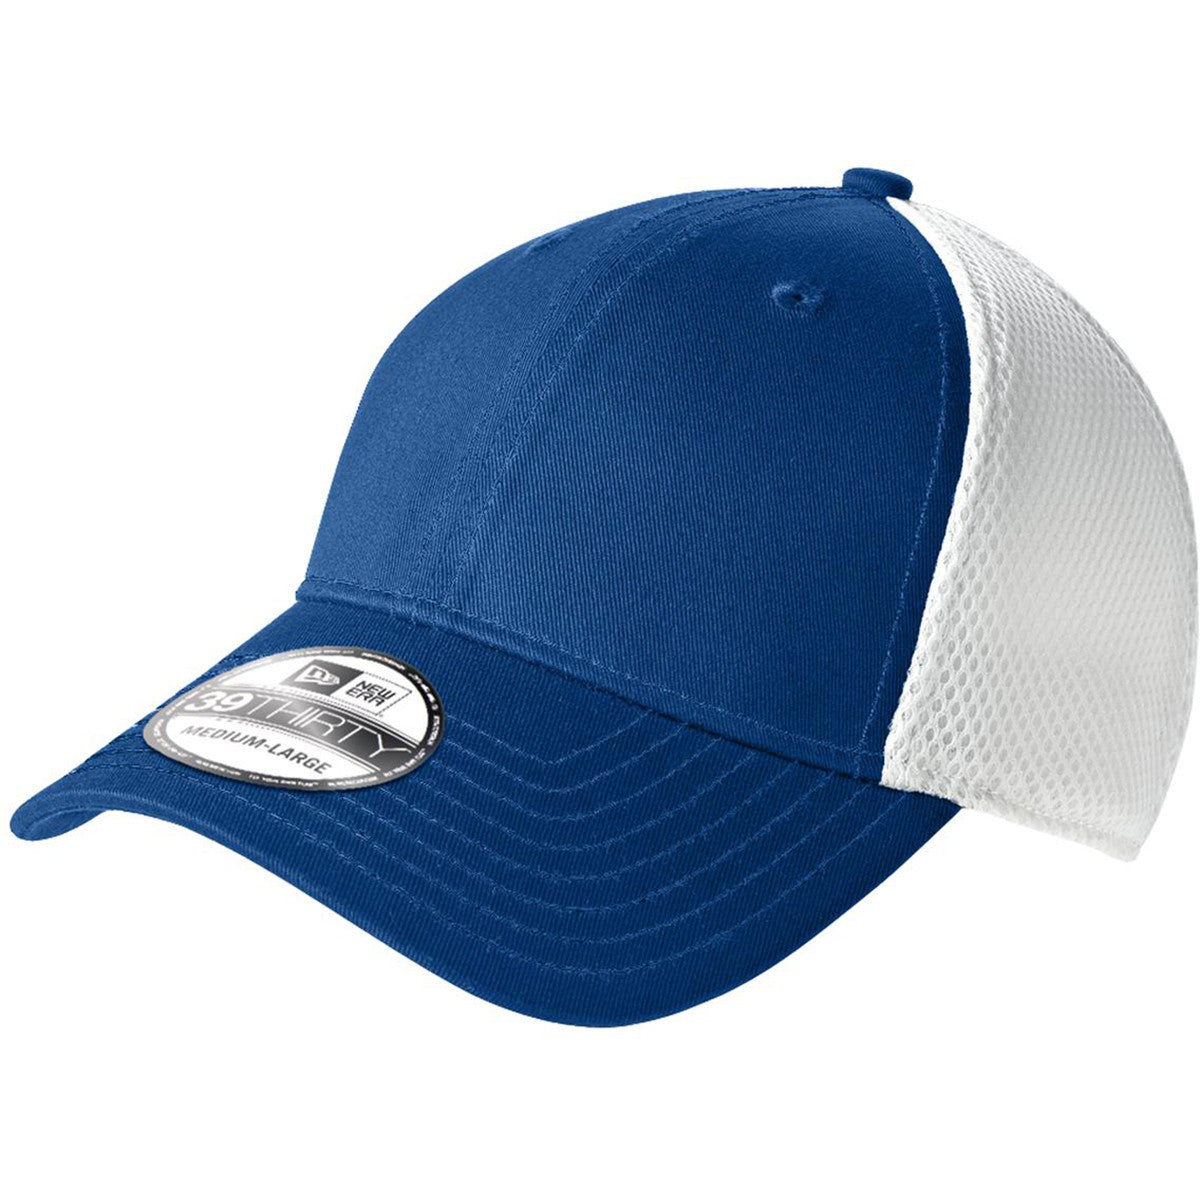 new era trucker cap blue